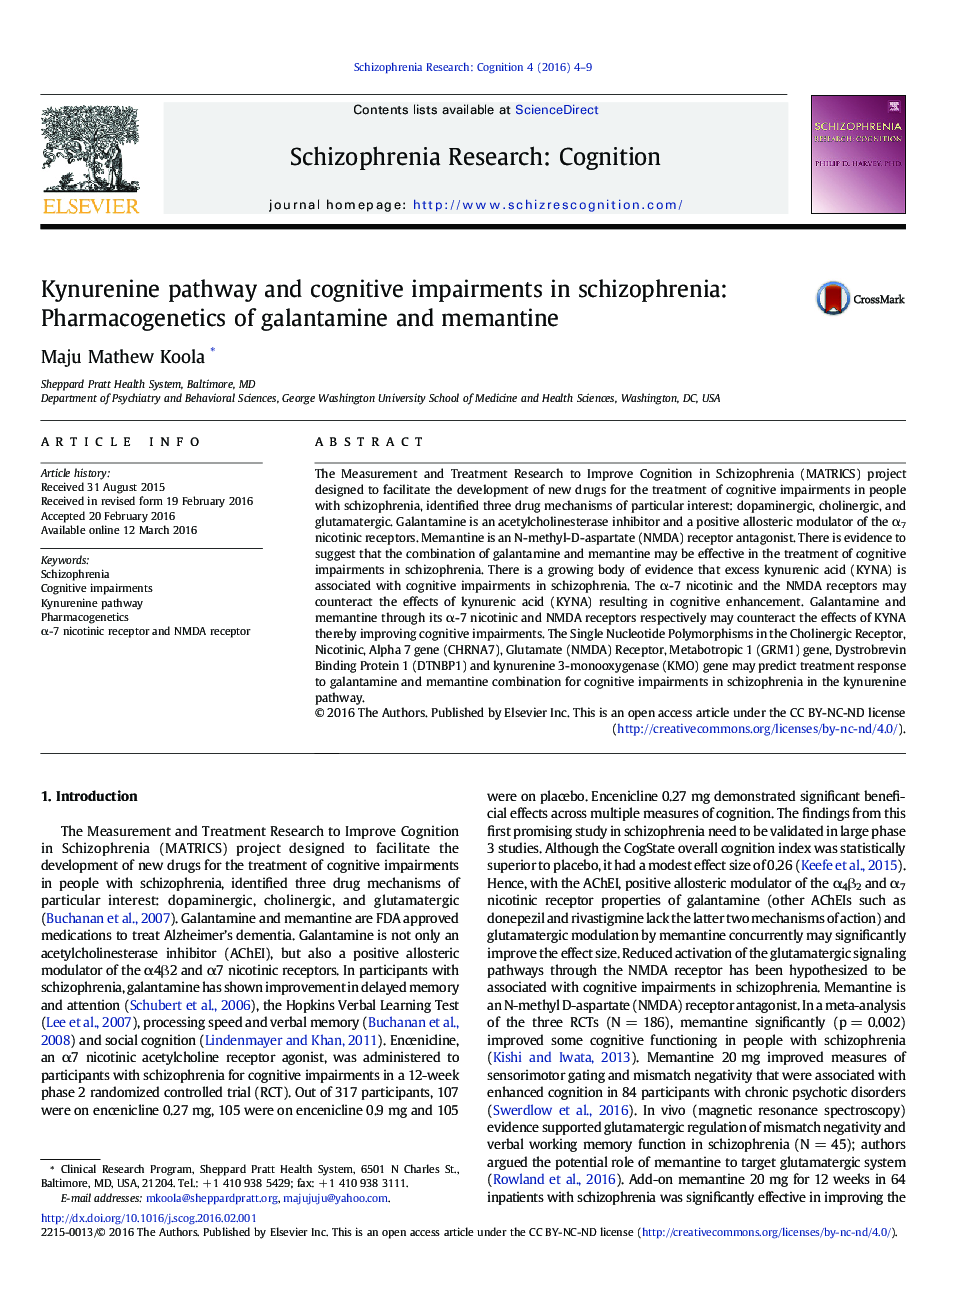 مسیر کینورنین و اختلالات شناختی در اسکیزوفرنی: فارماکوژنتیک گالانتامین و ممانتین